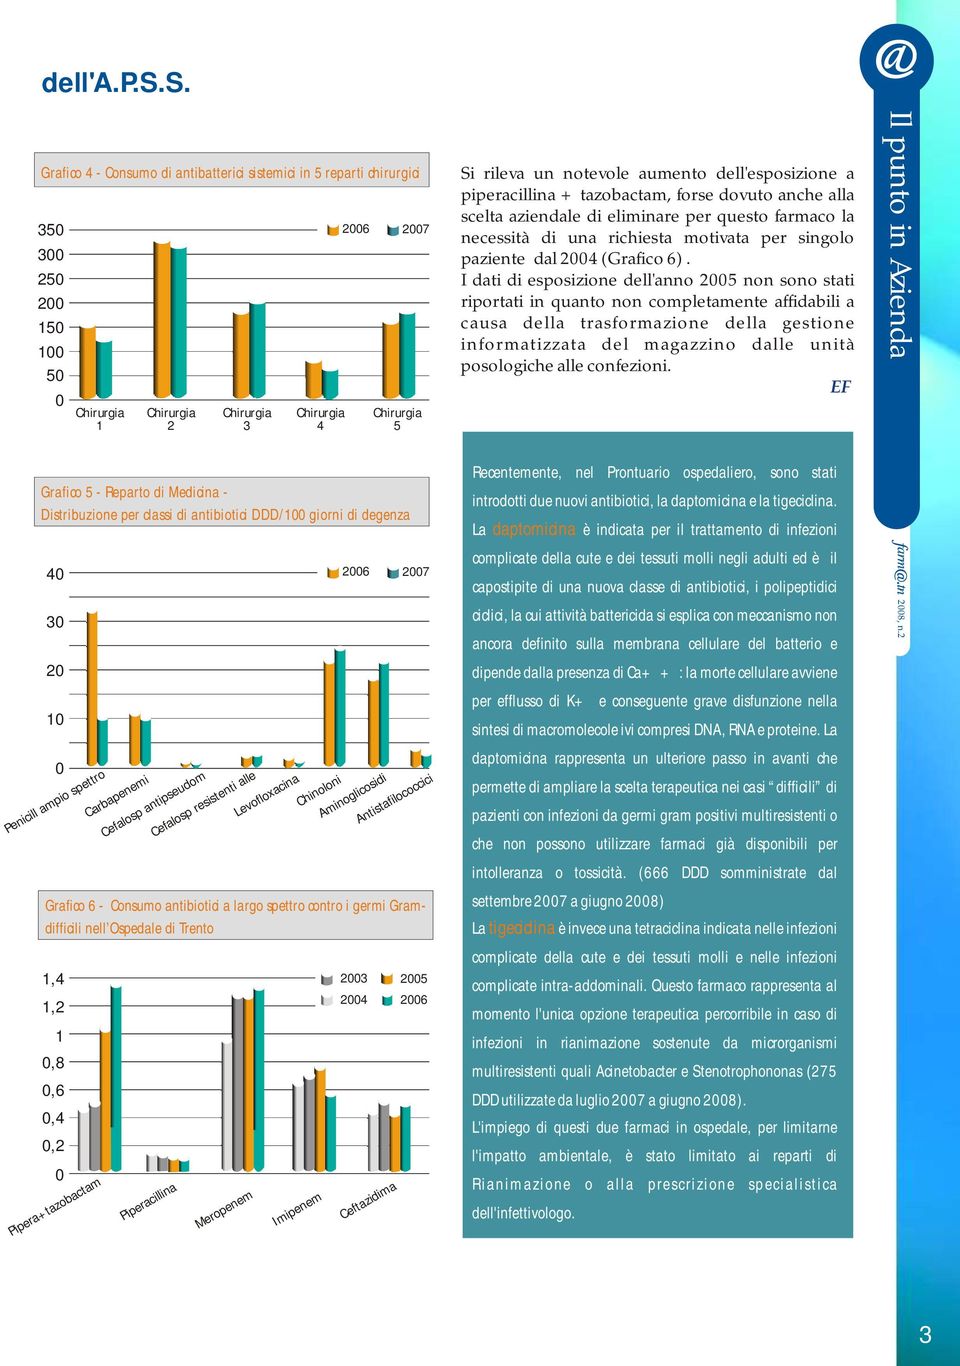 Antistafilococcici Grafico 6 - Consumo antibiotici a largo spettro contro i germi Gramdifficili nell Ospedale di Trento 1,4 1,2 1 0,8 0,6 0,4 0,2 0 Piperacillina Meropenem Imipenem 2003 2004